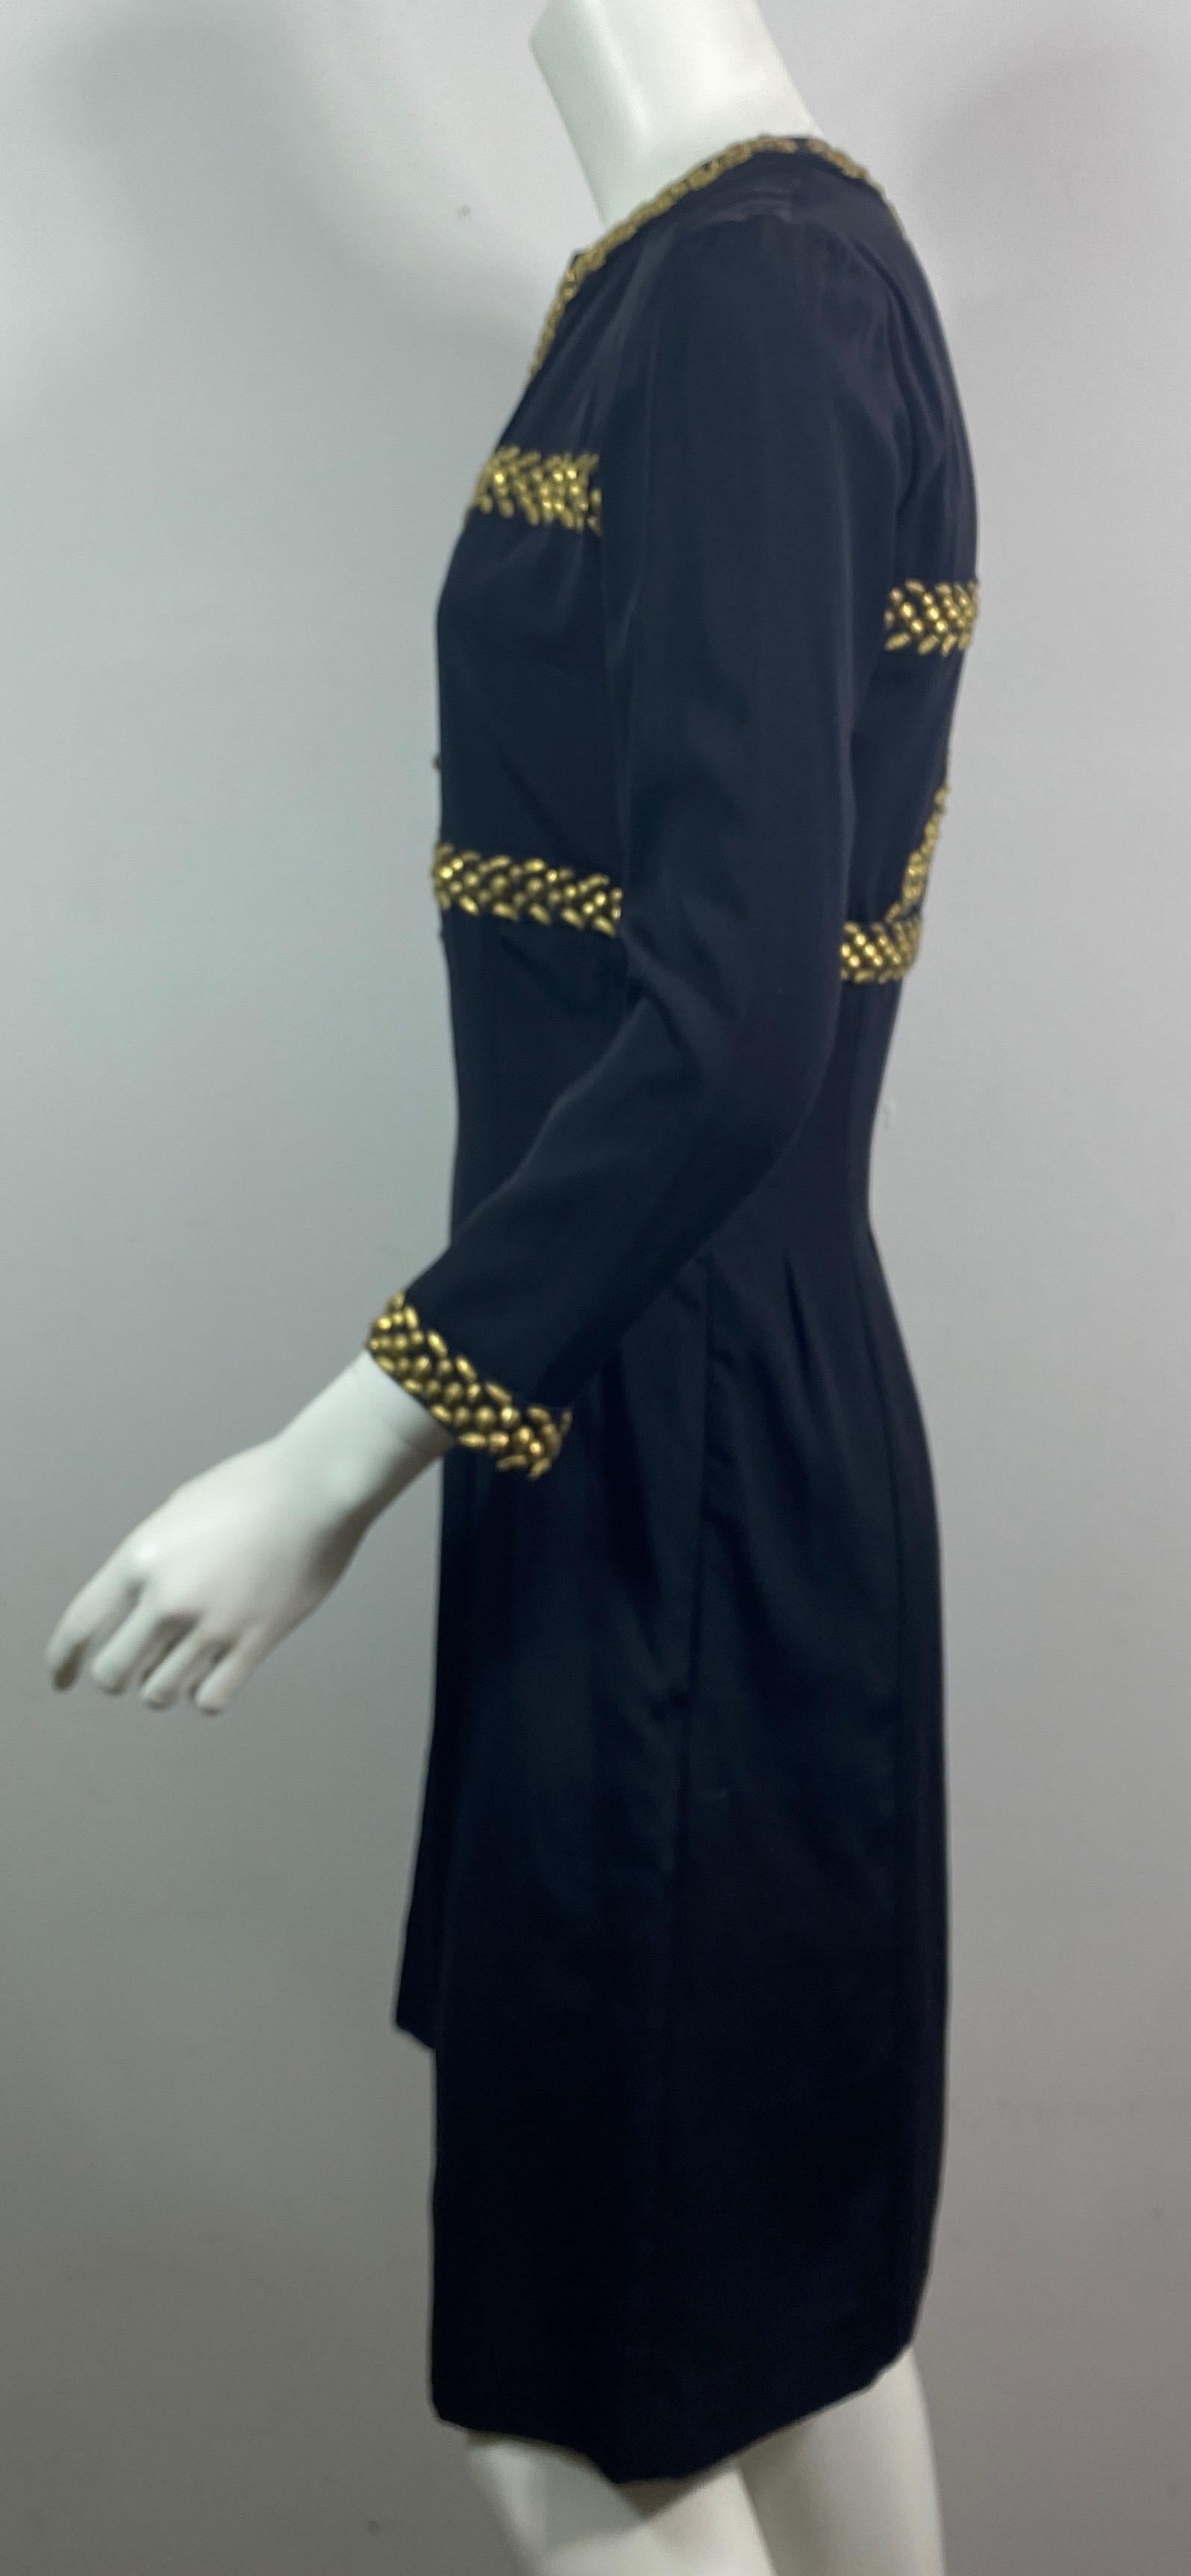 Chloe Spring 2003 Bronze Embellished Black Dress - Size 36 For Sale 3